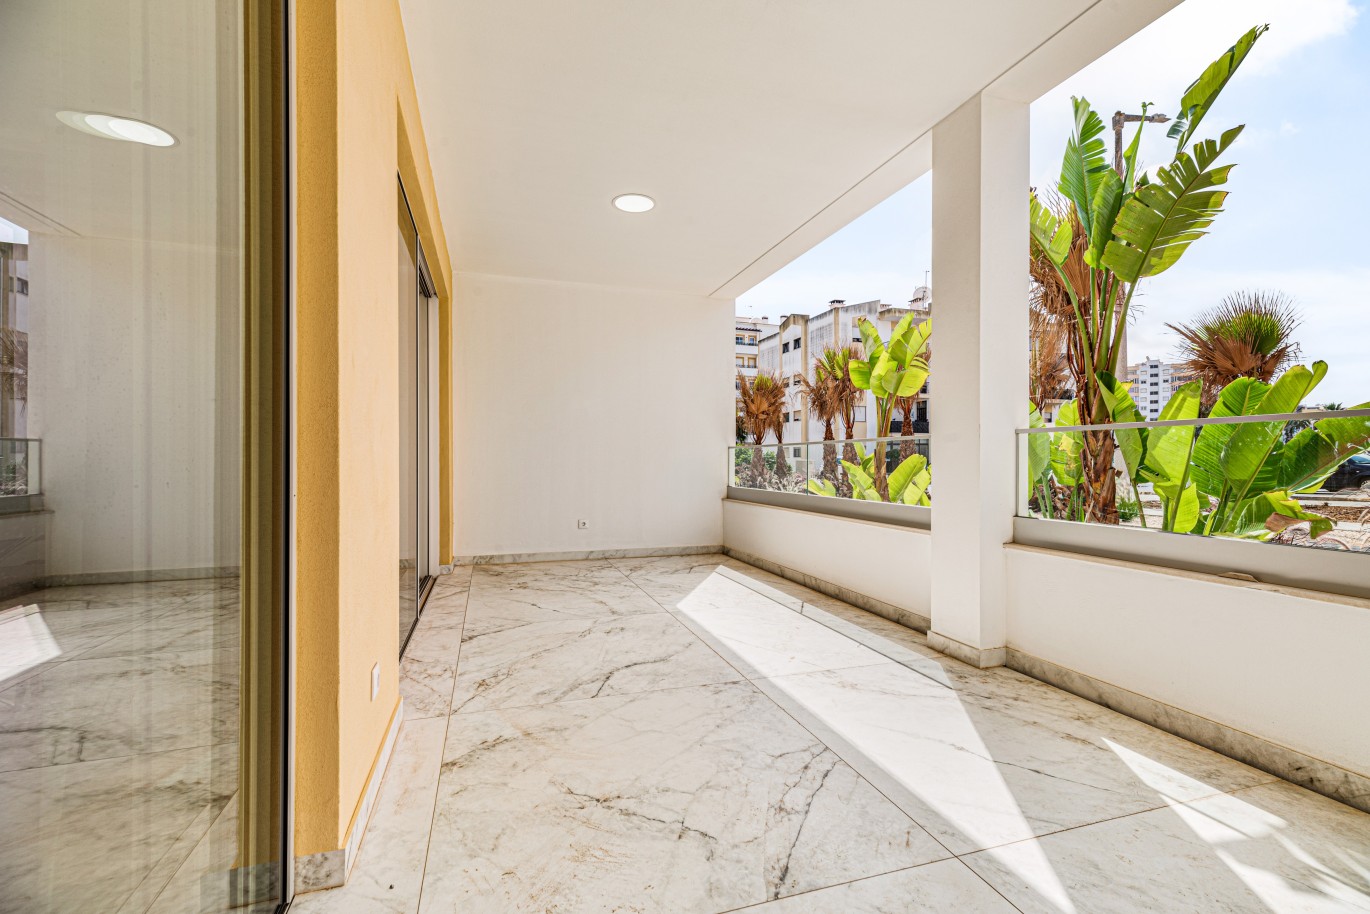 Apartamento em construção, com terraço, para venda, em Lagos, Algarve_238540